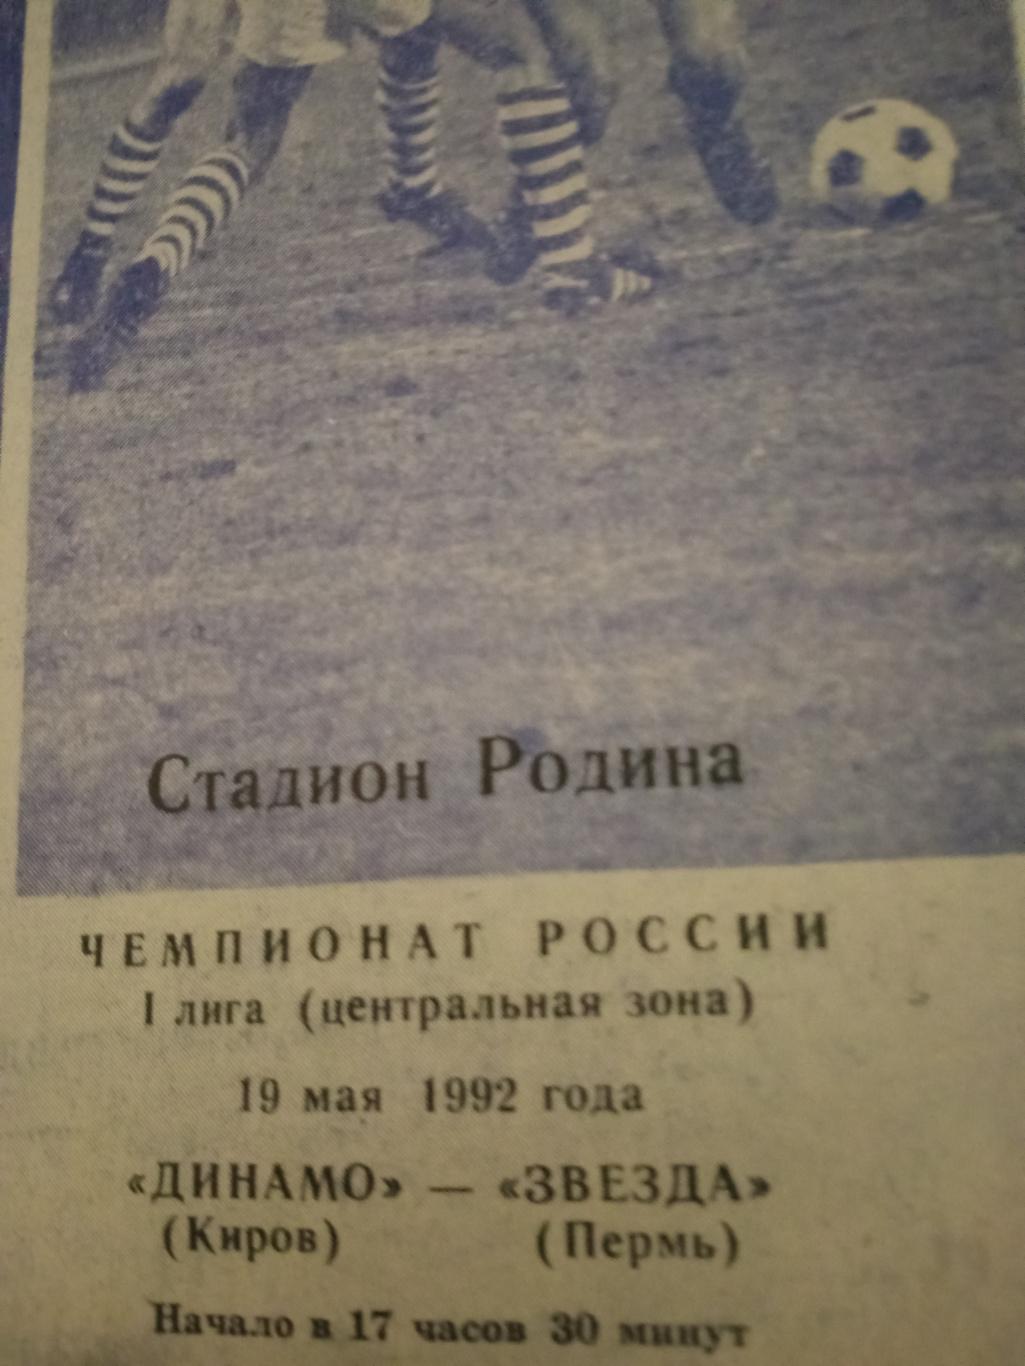 Динамо Киров - Звезда Пермь. 19 мая 1992 год